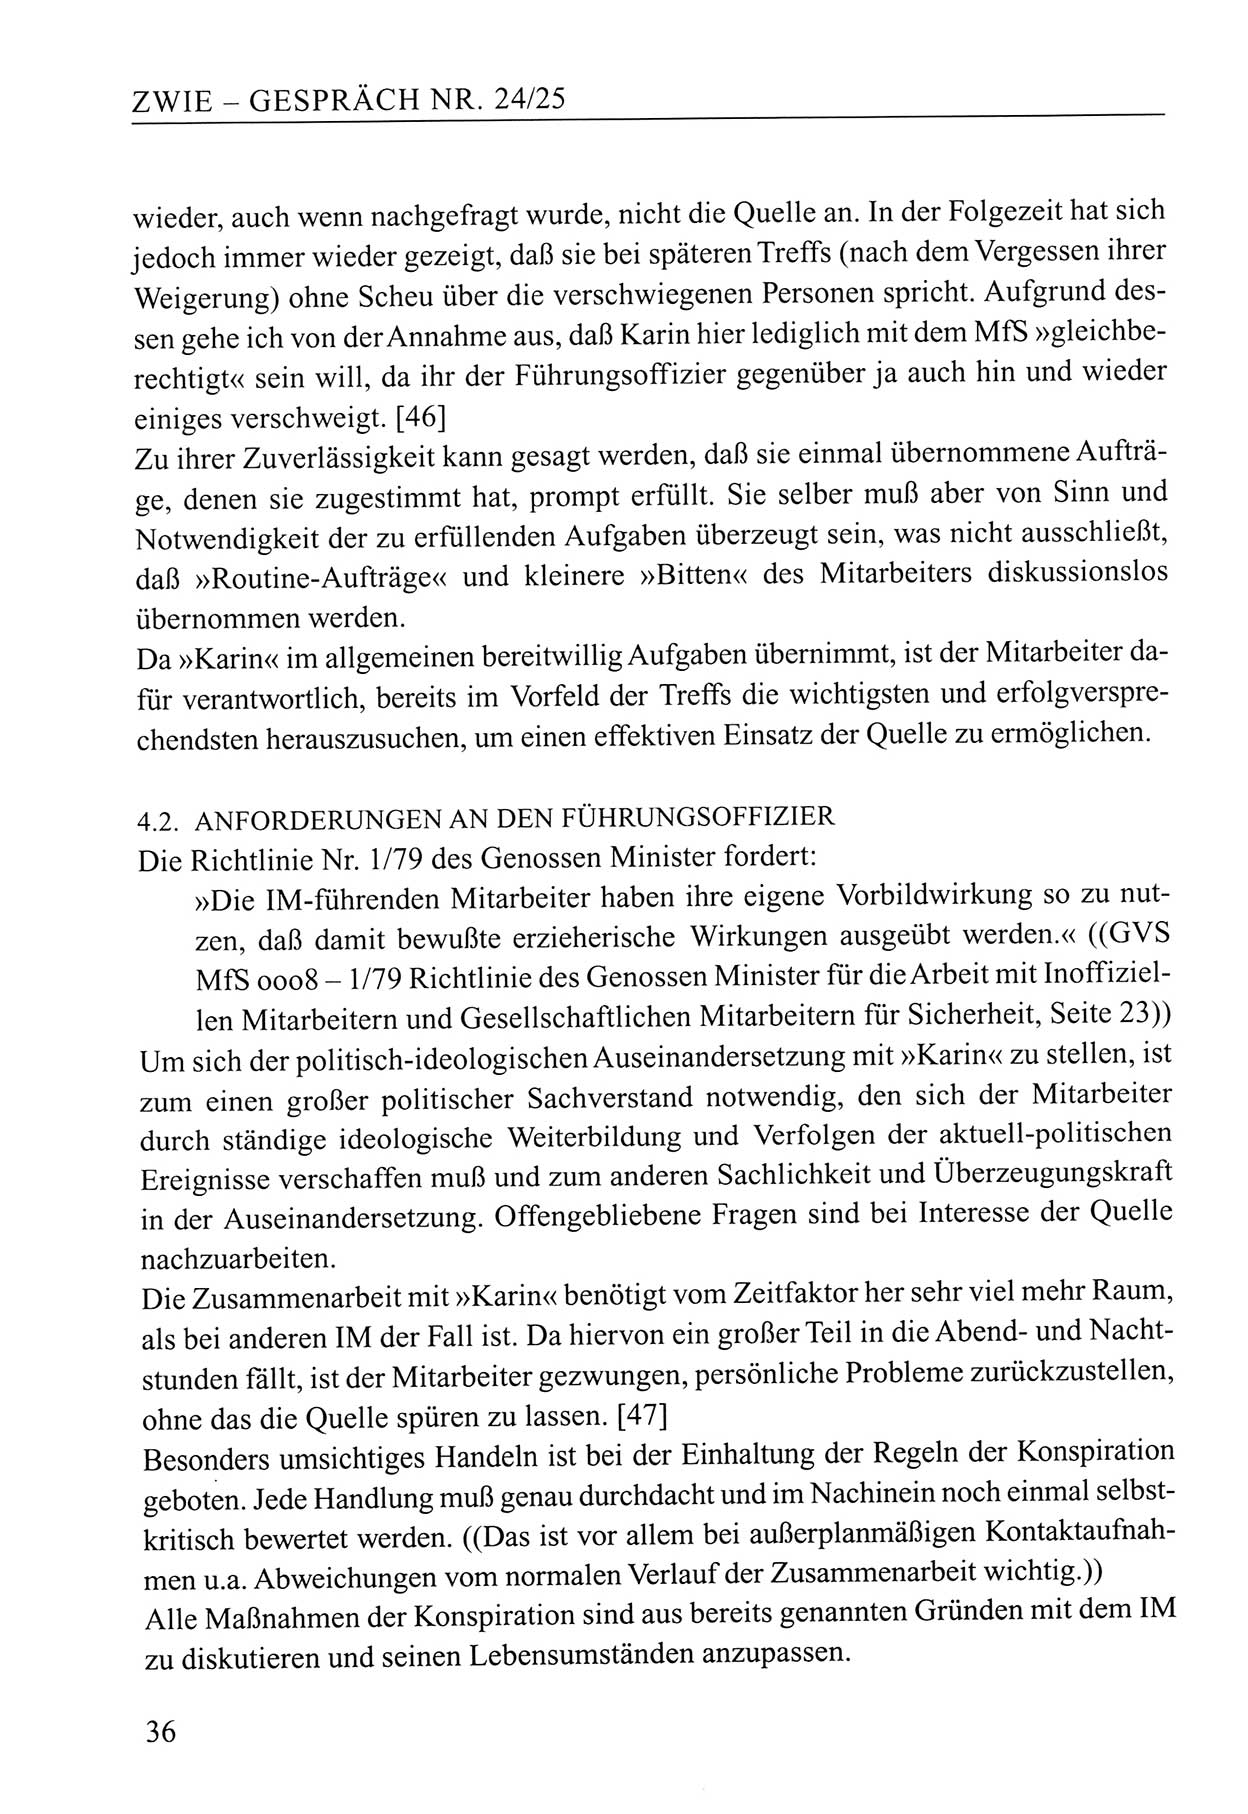 Zwie-Gespräch, Beiträge zum Umgang mit der Staatssicherheits-Vergangenheit [Deutsche Demokratische Republik (DDR)], Ausgabe Nr. 24/25, Berlin 1994, Seite 36 (Zwie-Gespr. Ausg. 24/25 1994, S. 36)